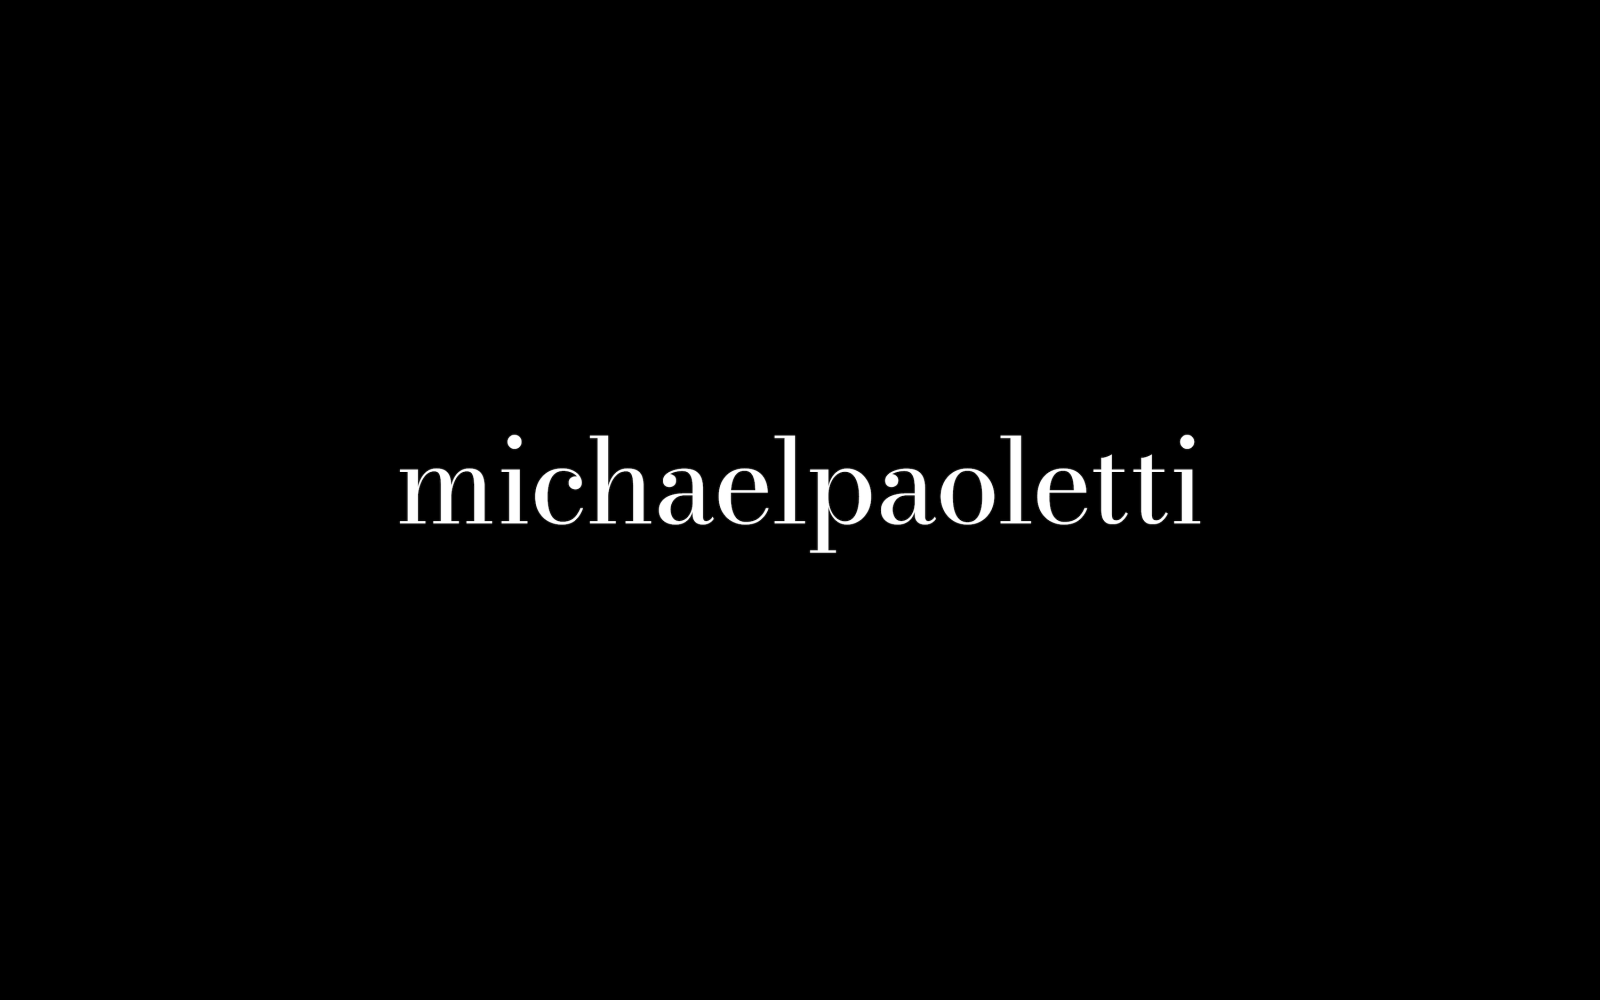 michaelpaoletti_m*3